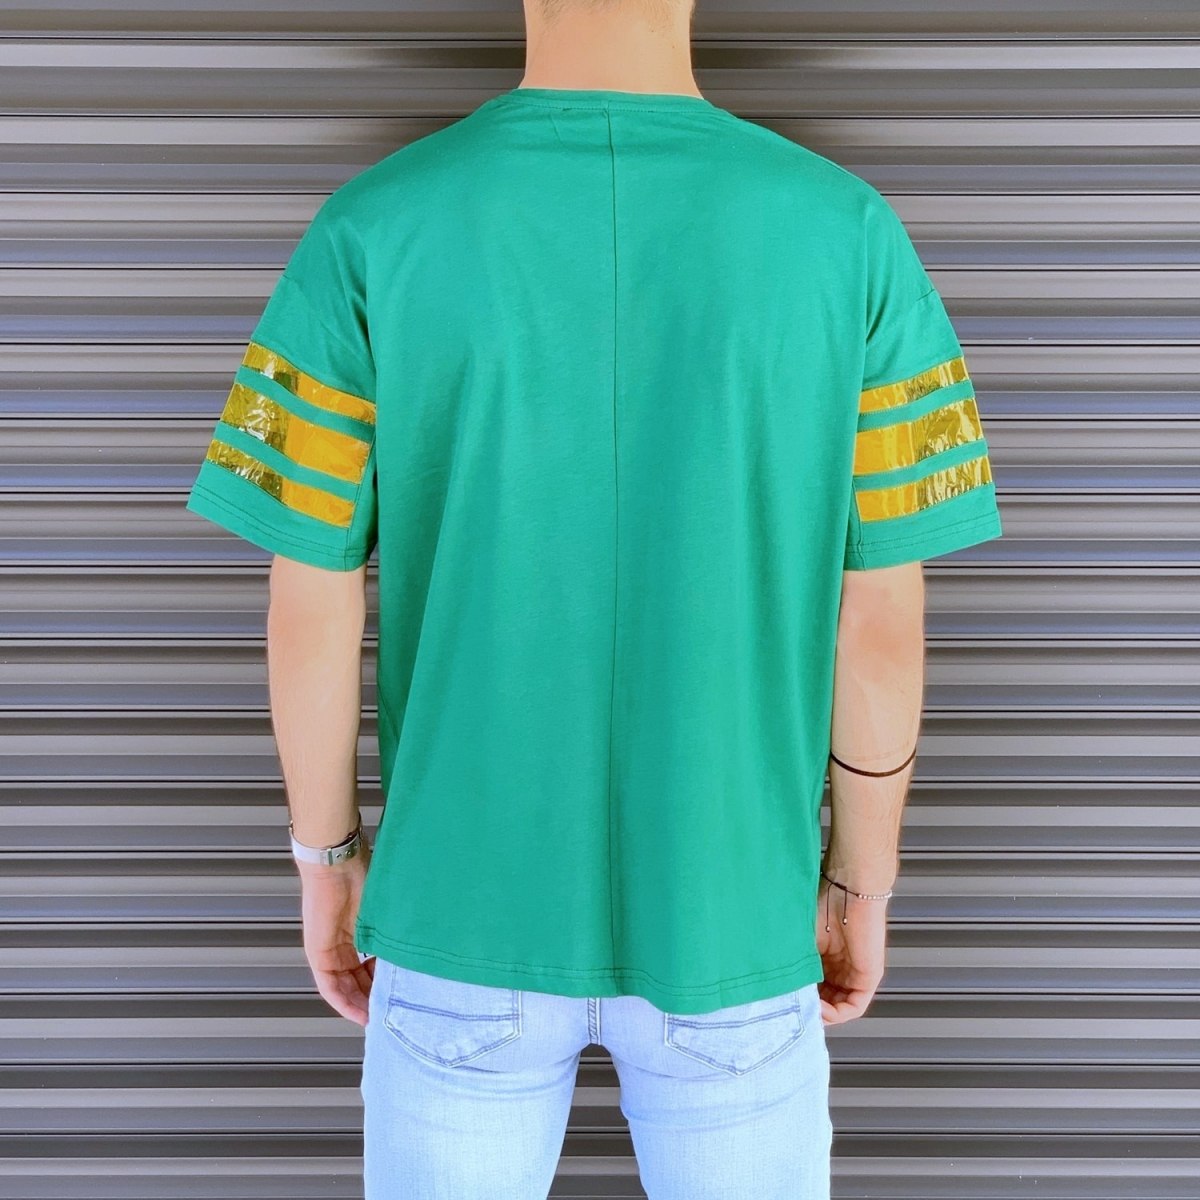 Herren T-Shirt mit weitem Schnitt und gestreiften Ärmeln in grün-gelb - 3